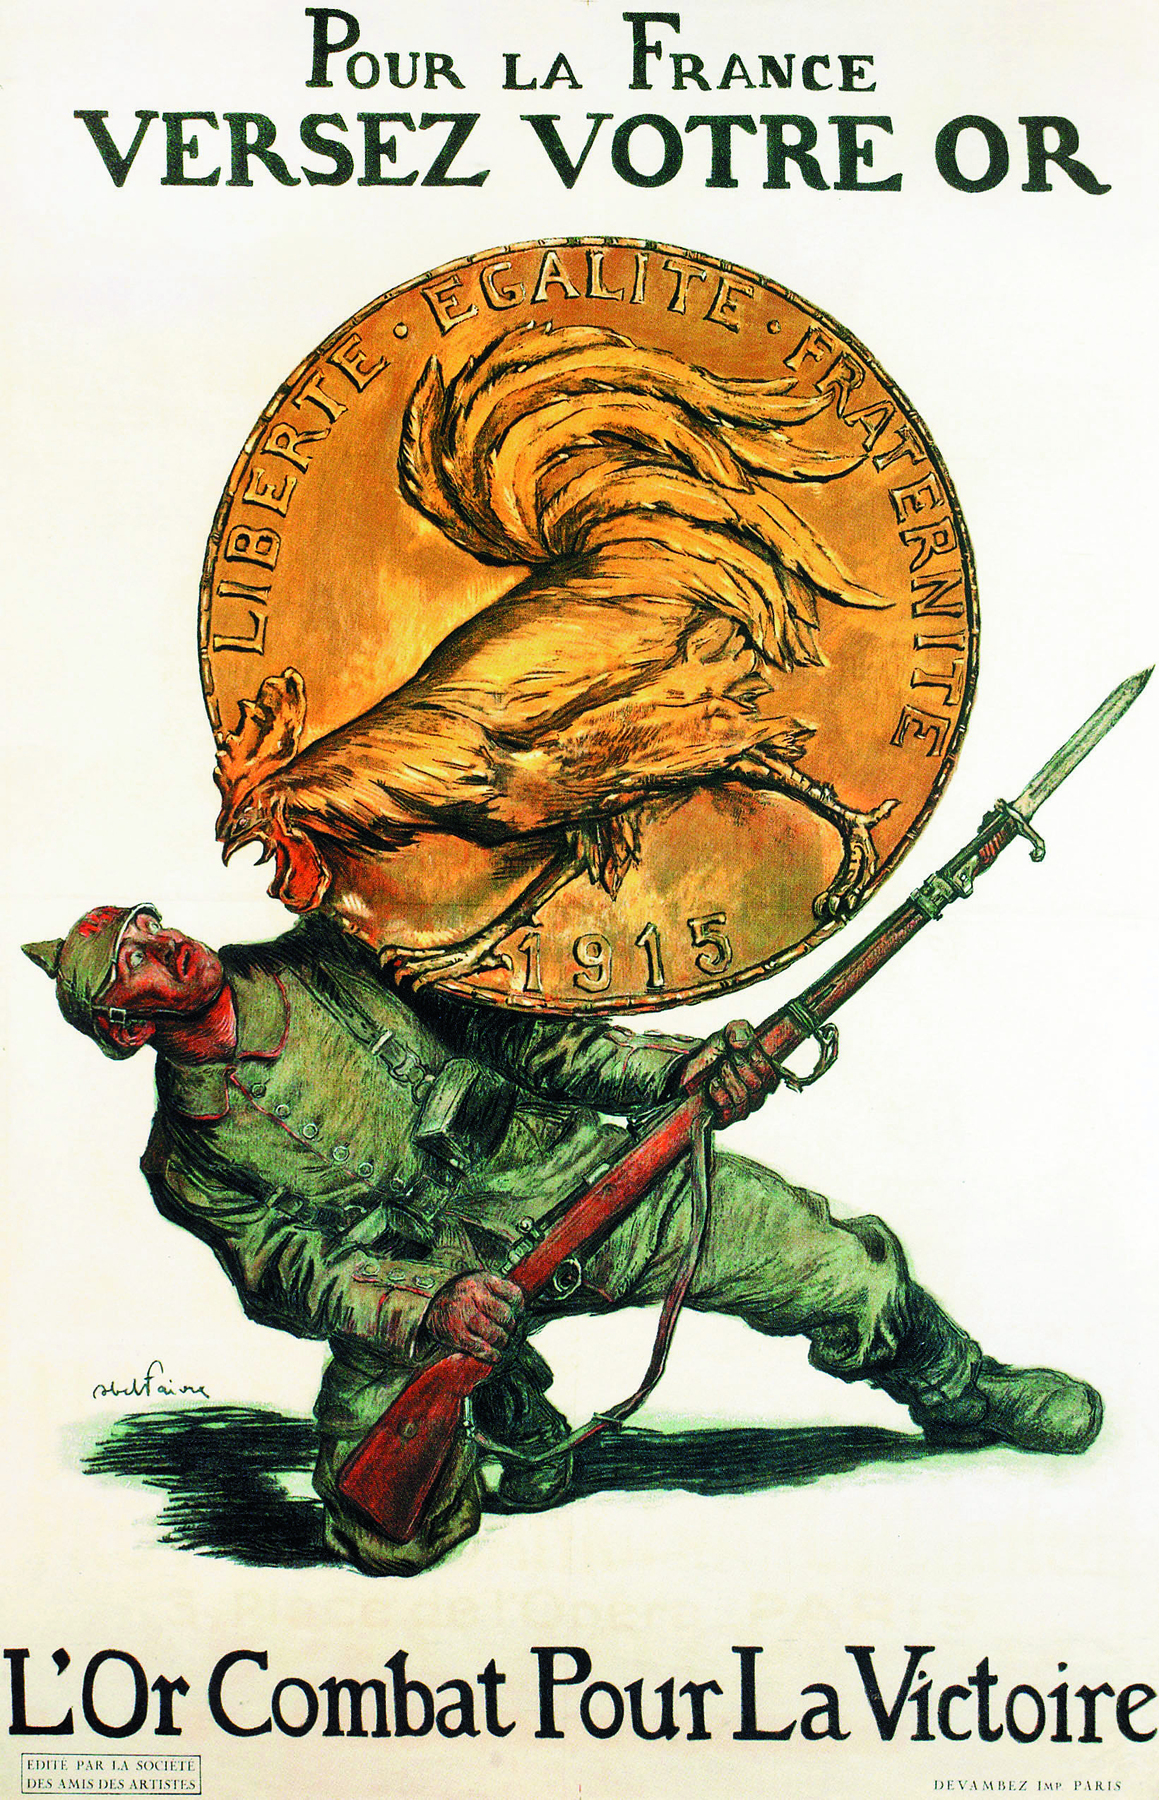 Cartaz. Ilustração que mostra soldado de uniforme verde, empunhando uma baioneta comprida, está abaixado, com os olhos arregalados, um dos joelhos no chão e a outra perna esticada. Uma grande moeda dourada está sobre ele, forçando seu corpo para baixo. Na moeda, um galo bravo com o bico na direção do soldado. Ao redor do galo as informações: Liberté, Egalité, Fraternité, 1915. No cartaz as informações: POUR LA FRANCE VERSEZ VOTRE OR. L’OR COMBAT POUR LA VICTOIRE.